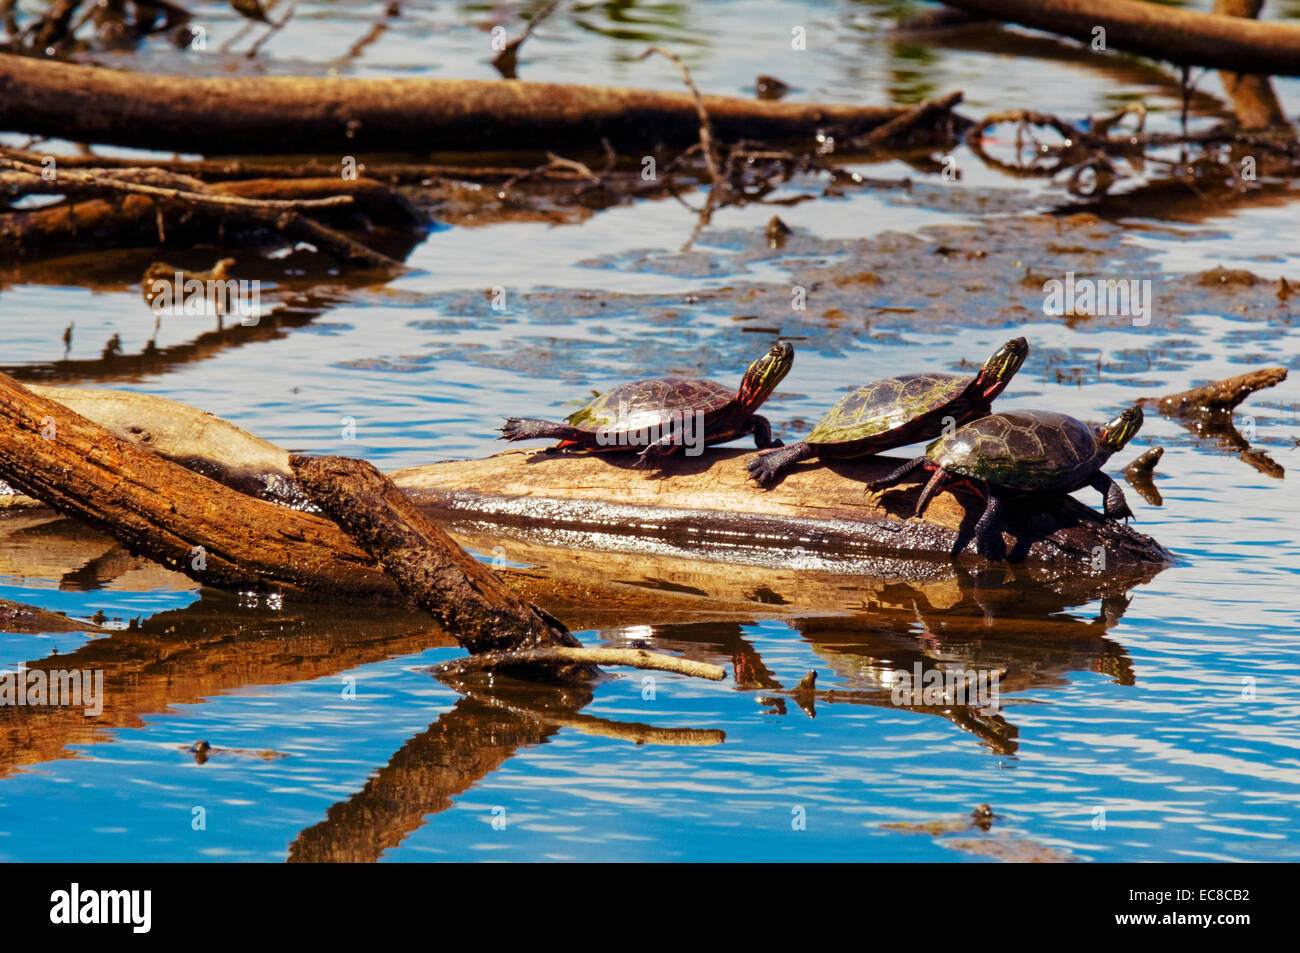 Tres tortugas s propios de la onu sobre un registro en una zona pantanosa. Foto de stock